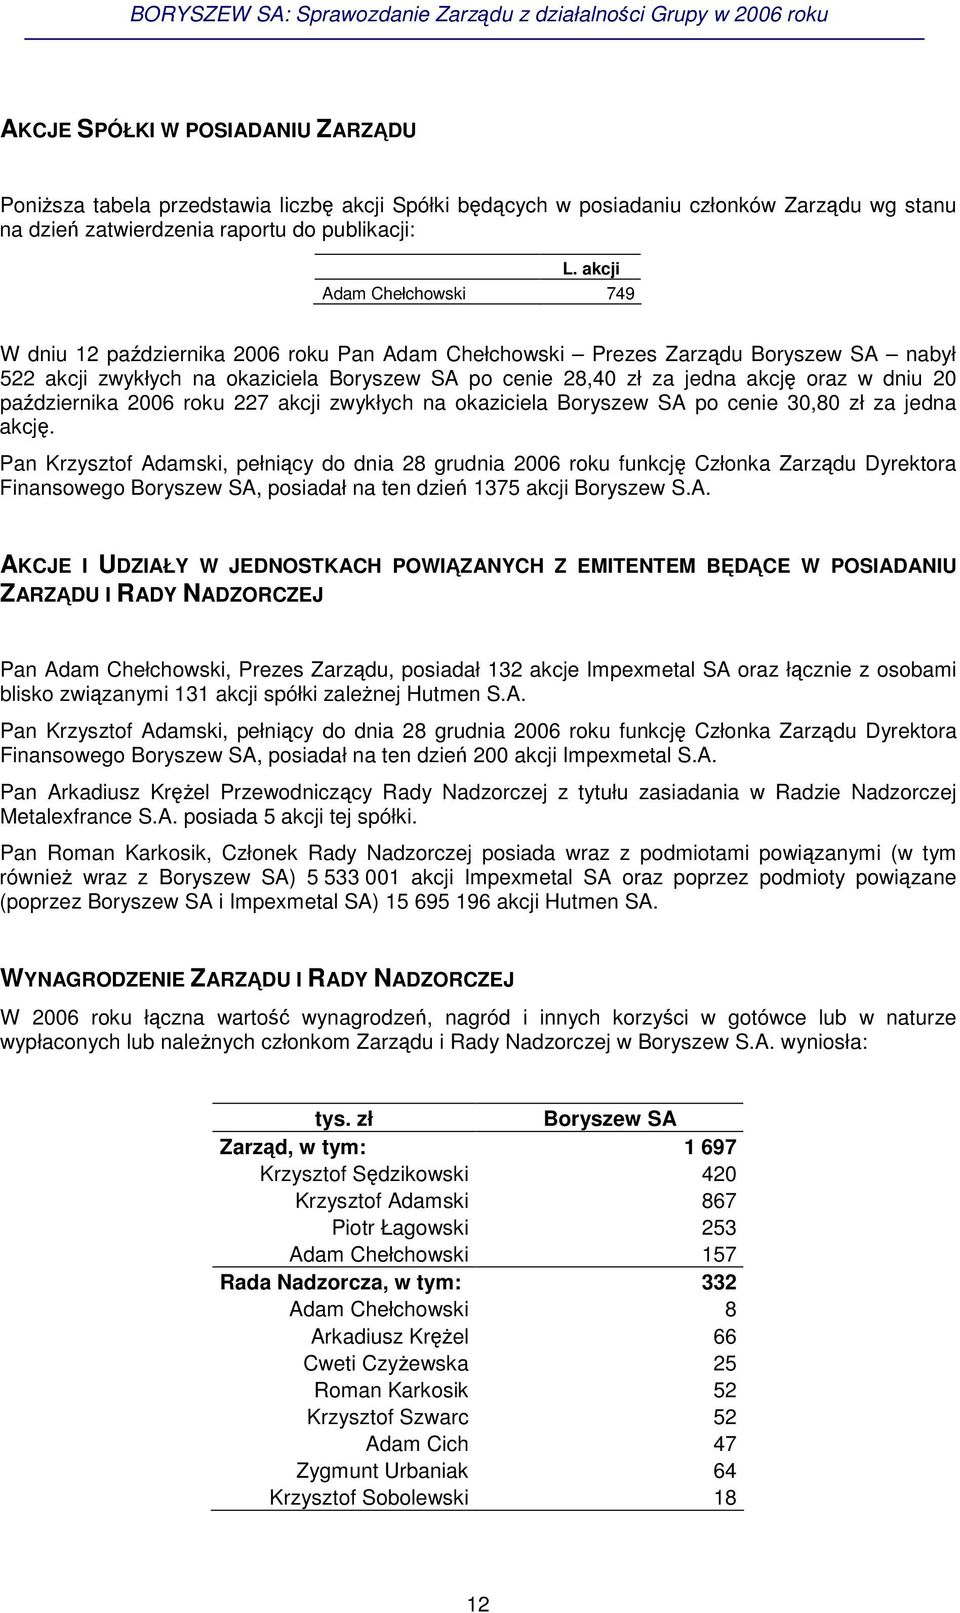 dniu 20 padziernika 2006 roku 227 akcji zwykłych na okaziciela Boryszew SA po cenie 30,80 zł za jedna akcj.